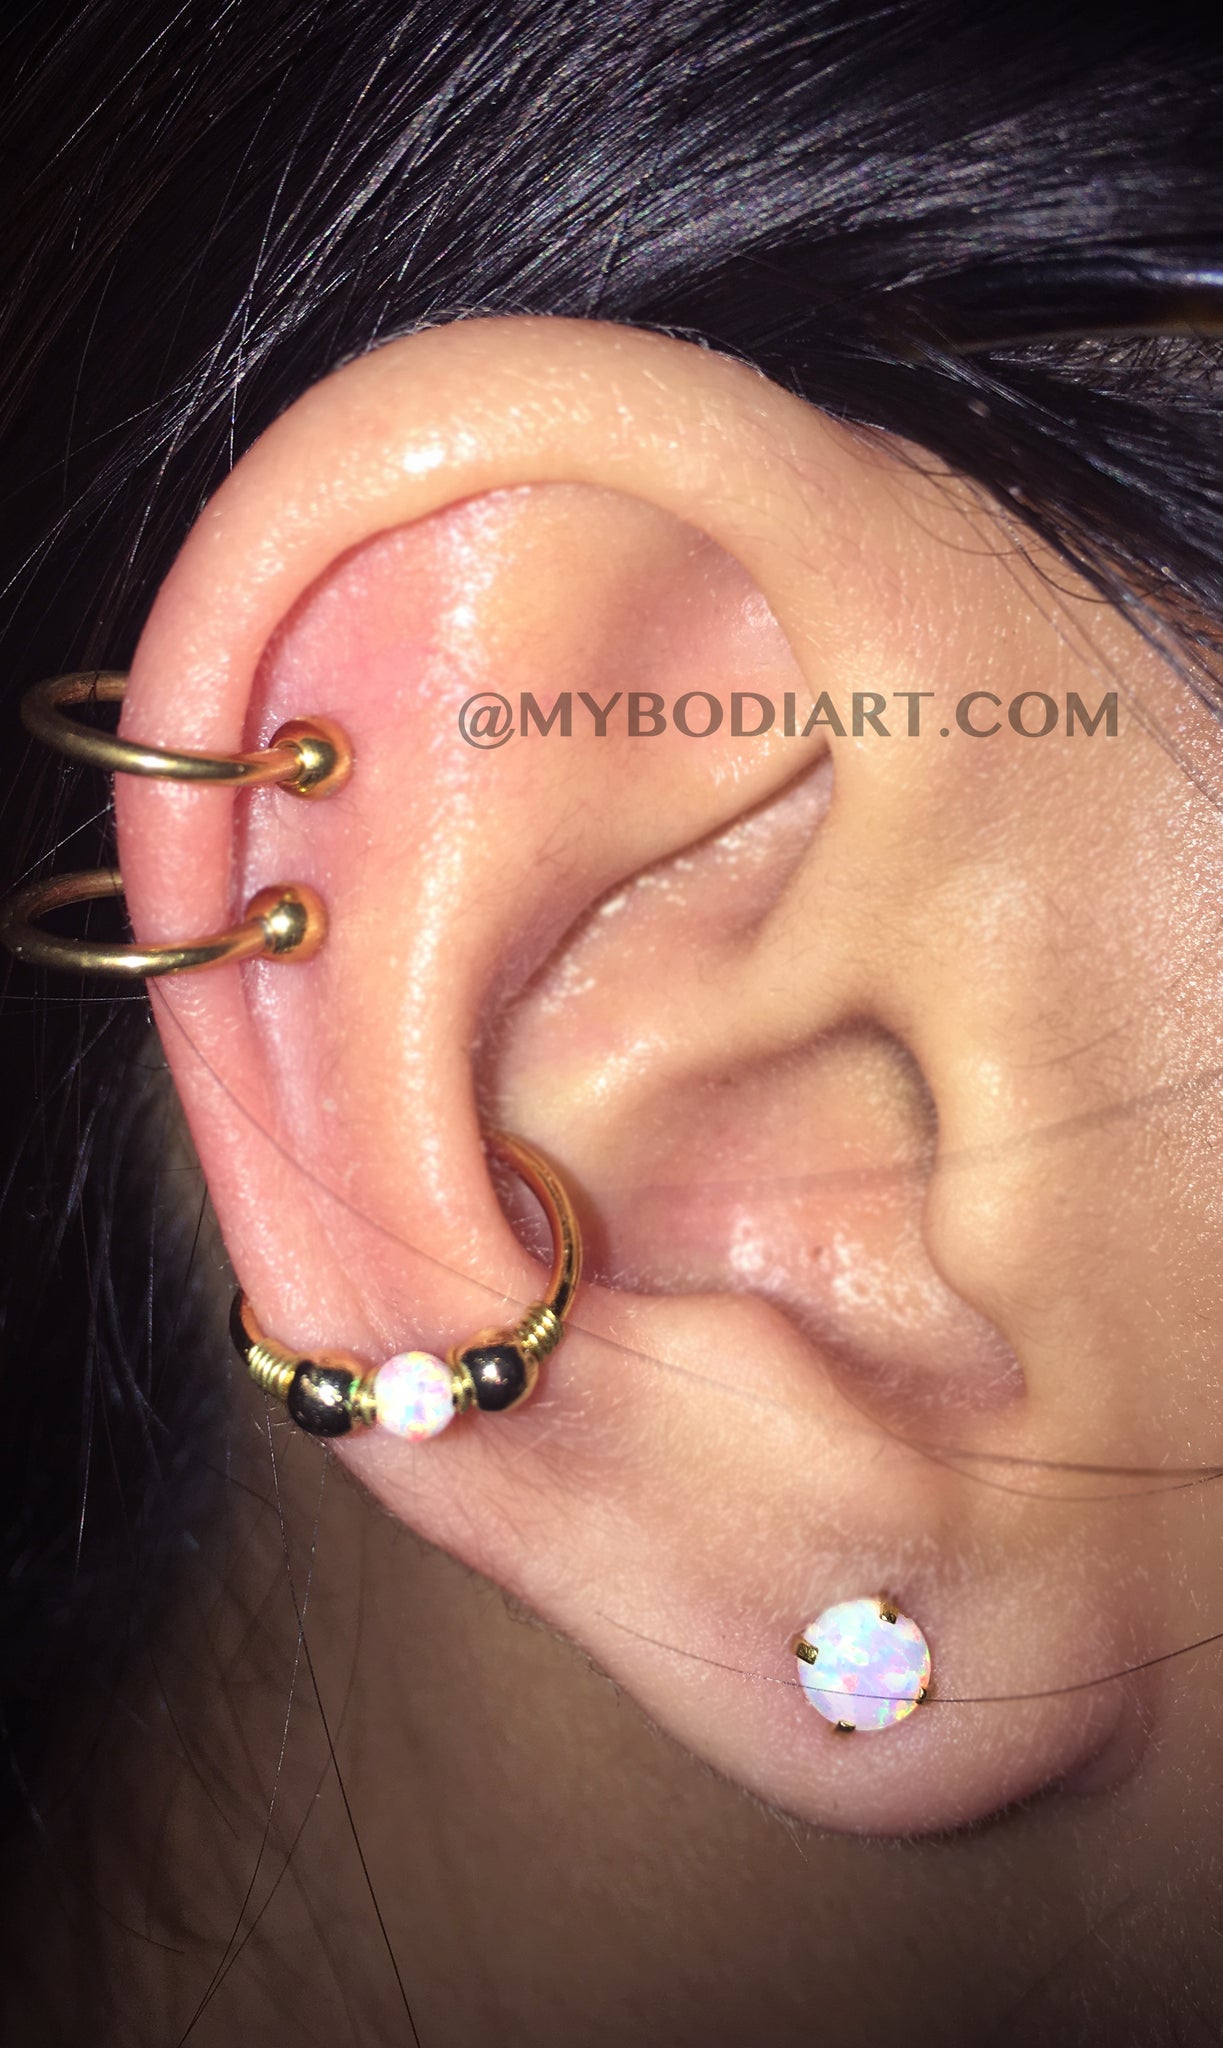 All the Way Around Multiple Ear Piercing Ideas - Double Cartilage Top Ear Rings - Conch Hoop - Opal Ear Lobe Studs - www.MyBodiArt.com